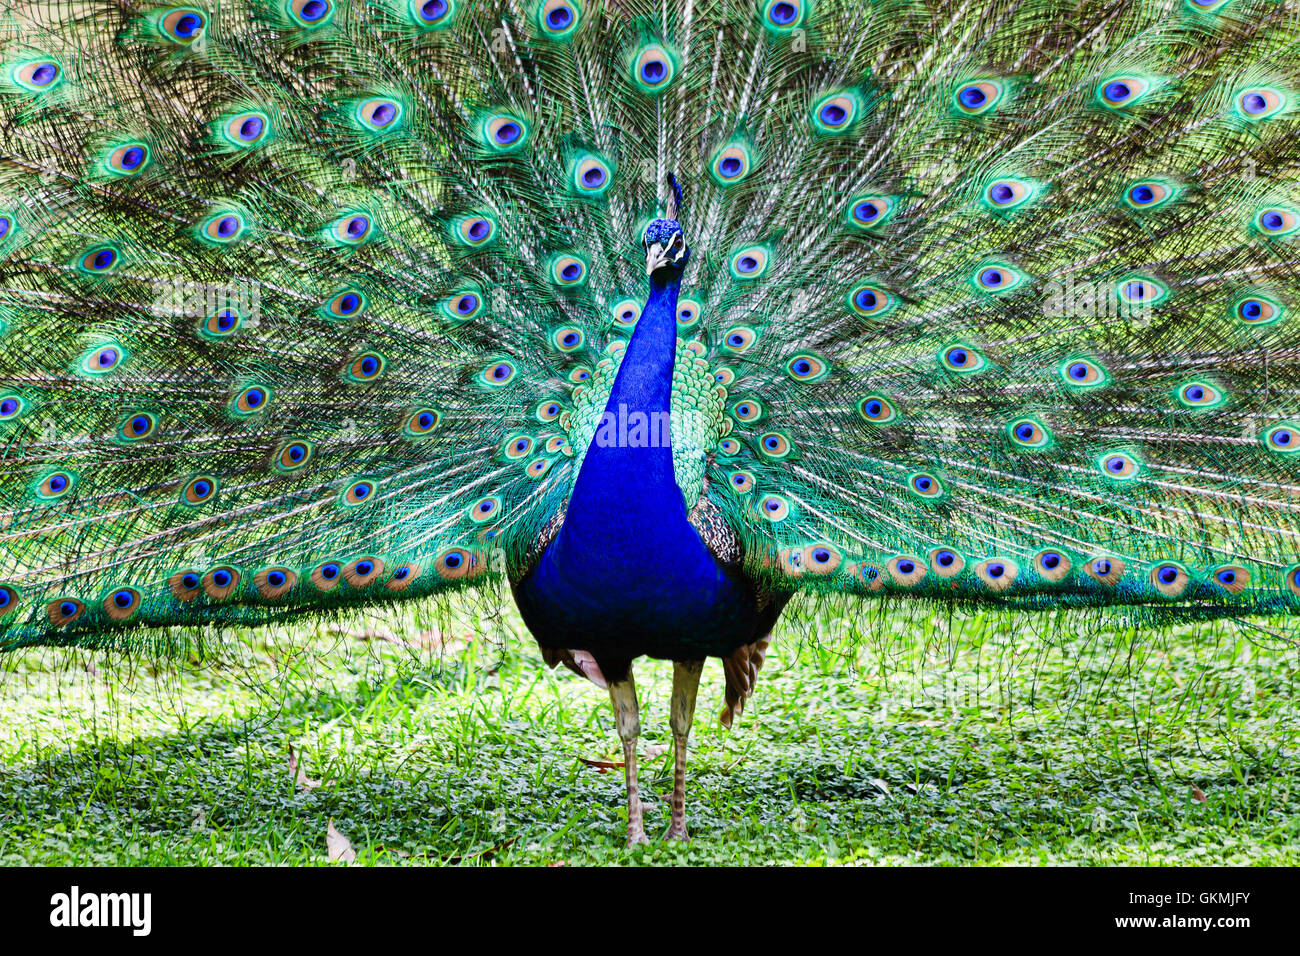 Oiseau paon coloré grand ouvert avec plein de longues plumes de queue debout sur une herbe verte. Banque D'Images